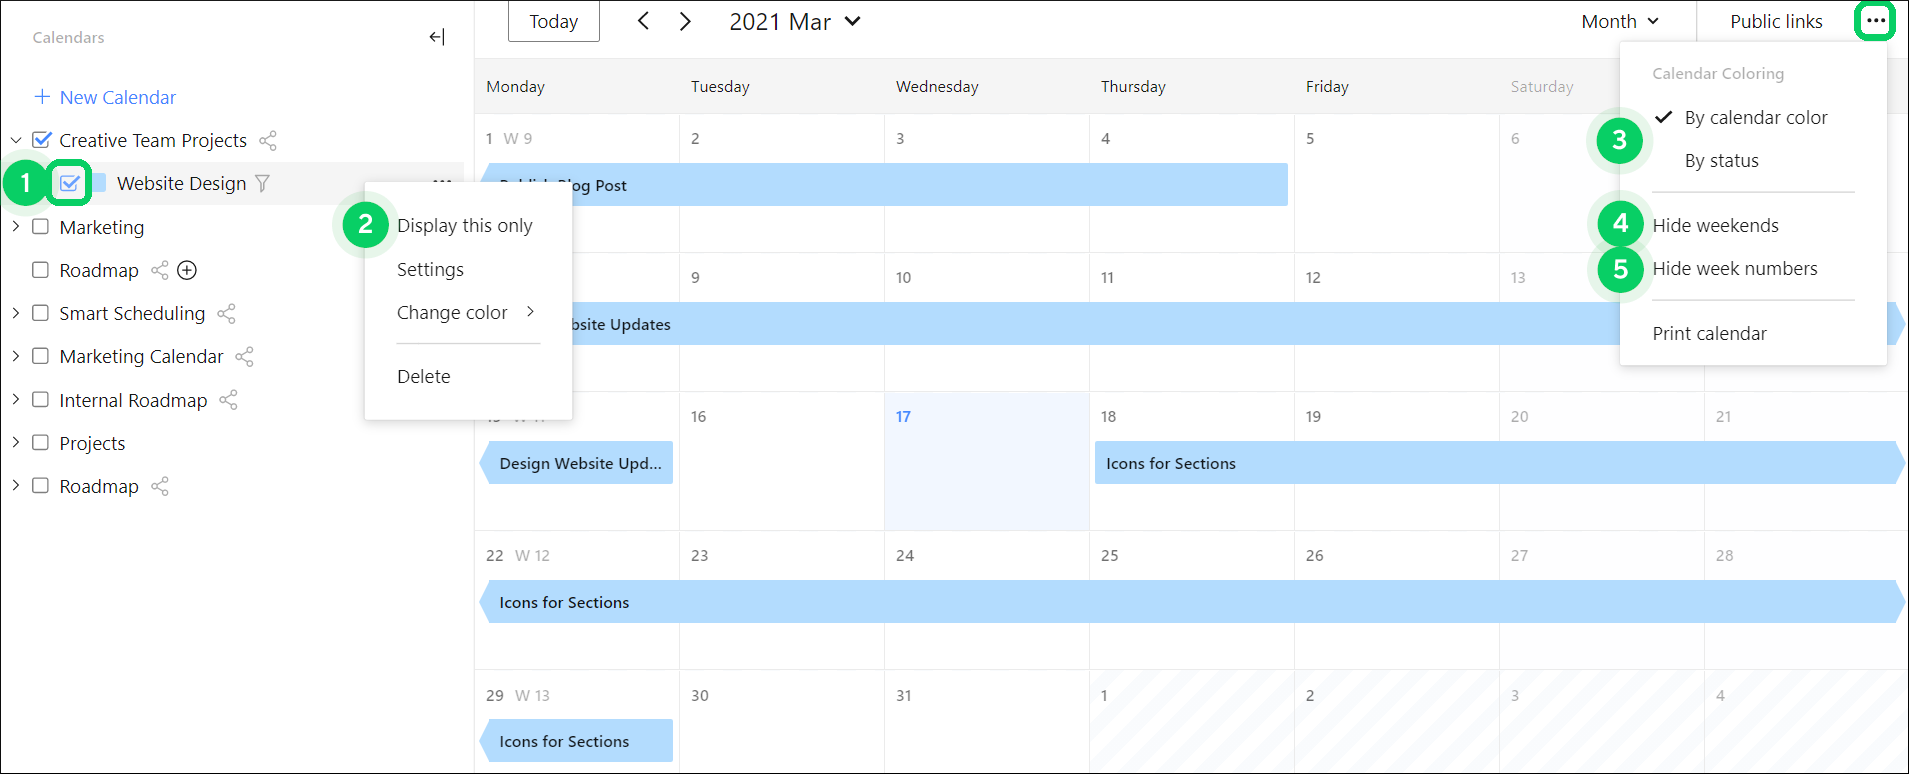 Calendars_-_Customize_calendars.png